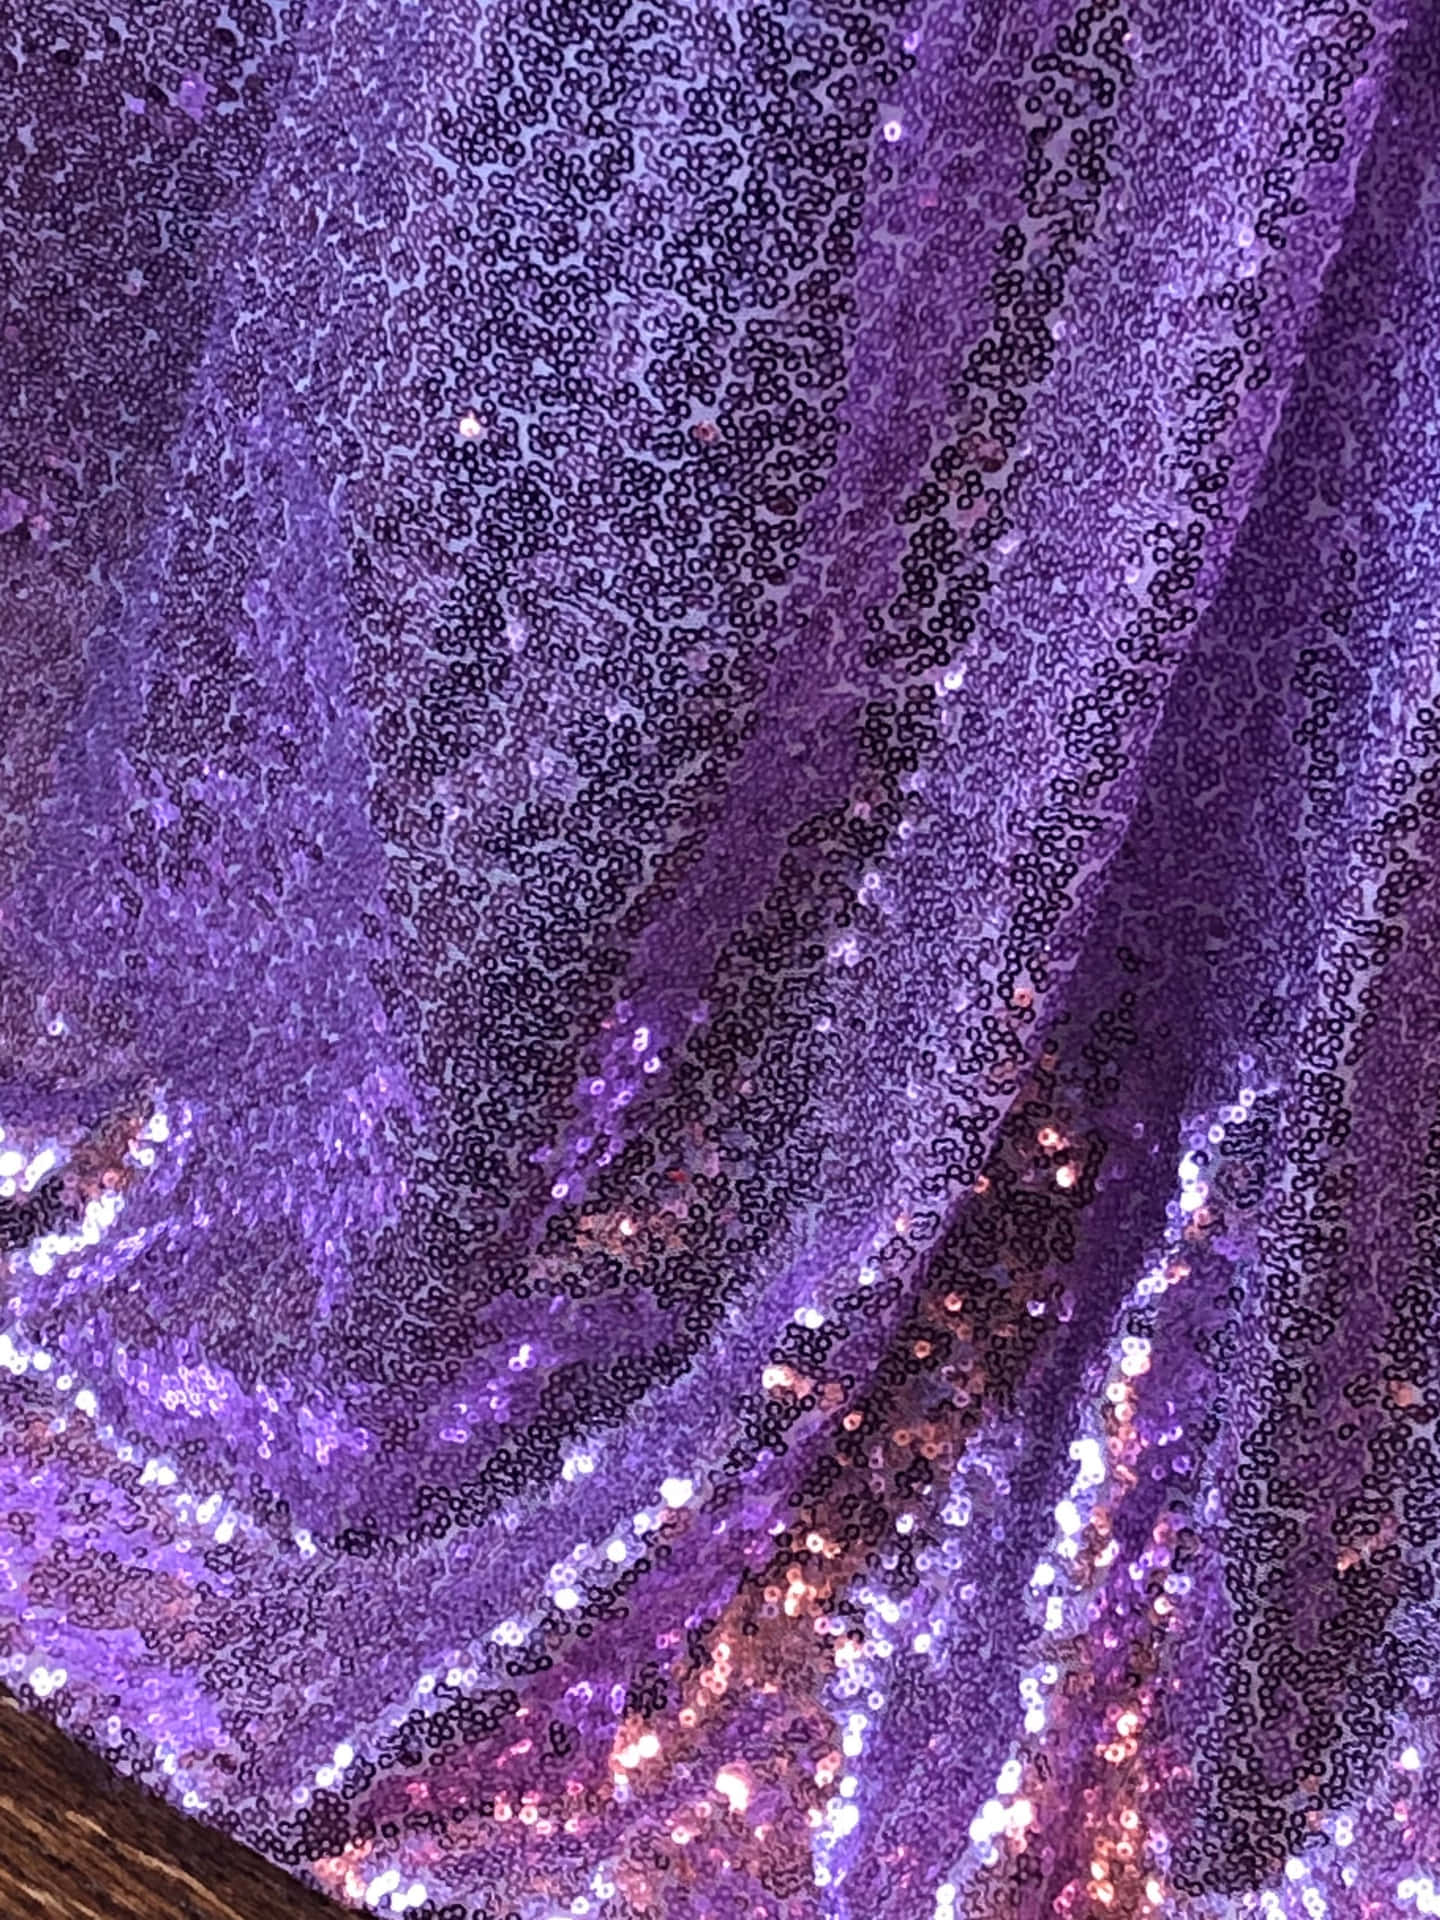 [100+] Purple Sequins Wallpapers | Wallpapers.com